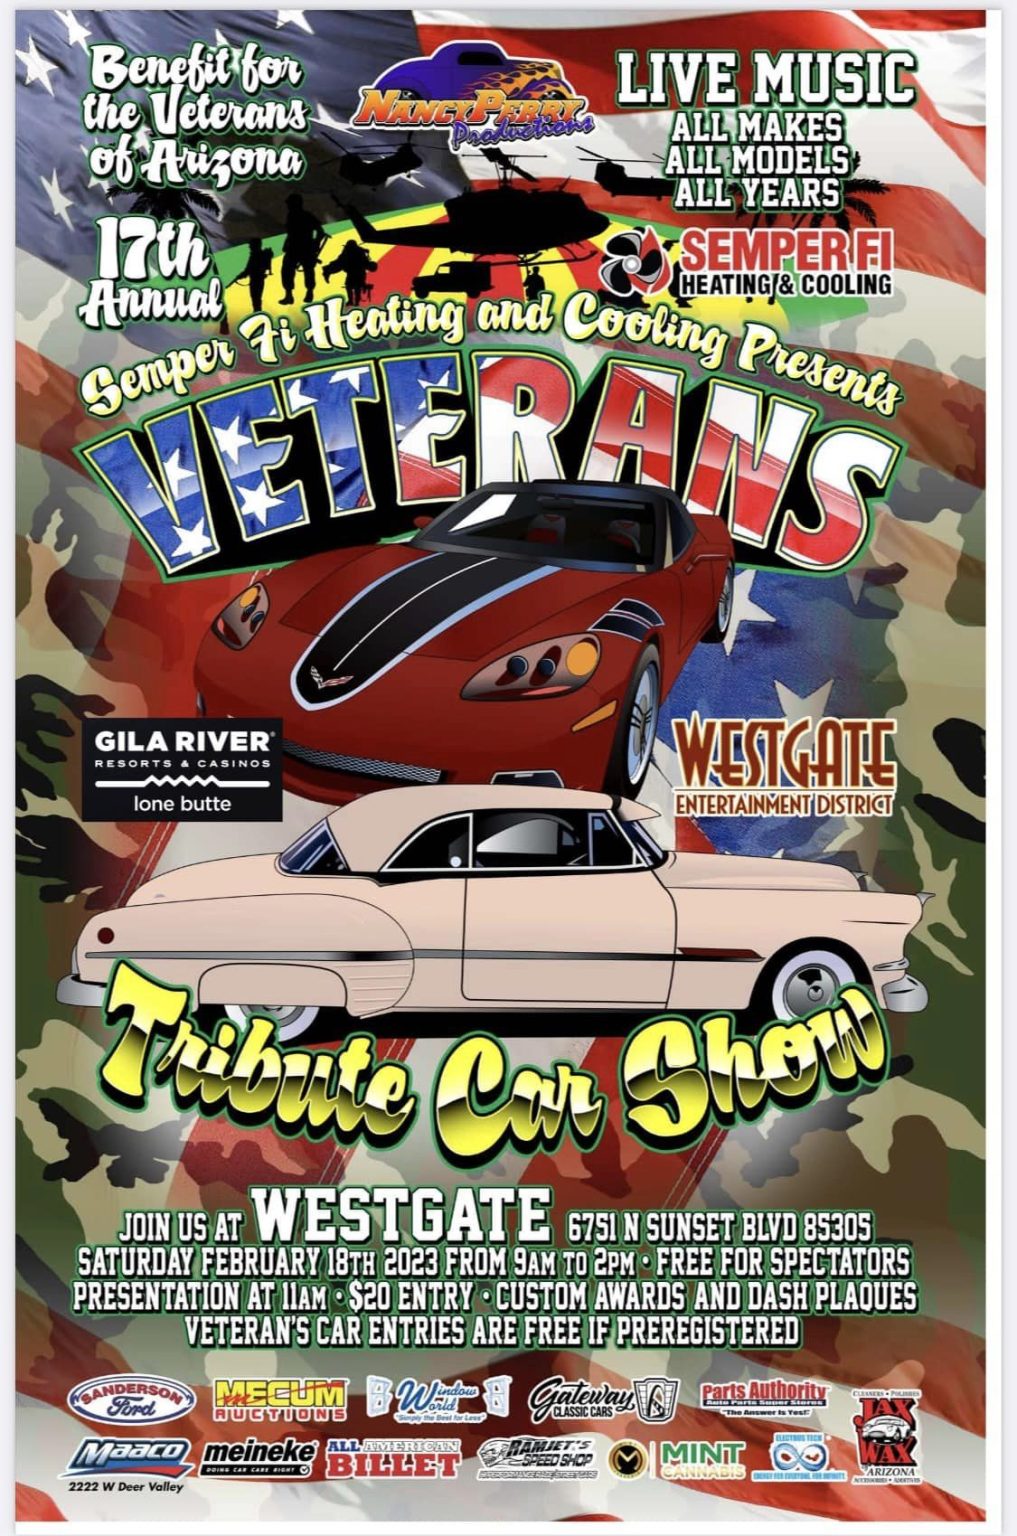 Veterans Car Show Arizona Car Culture